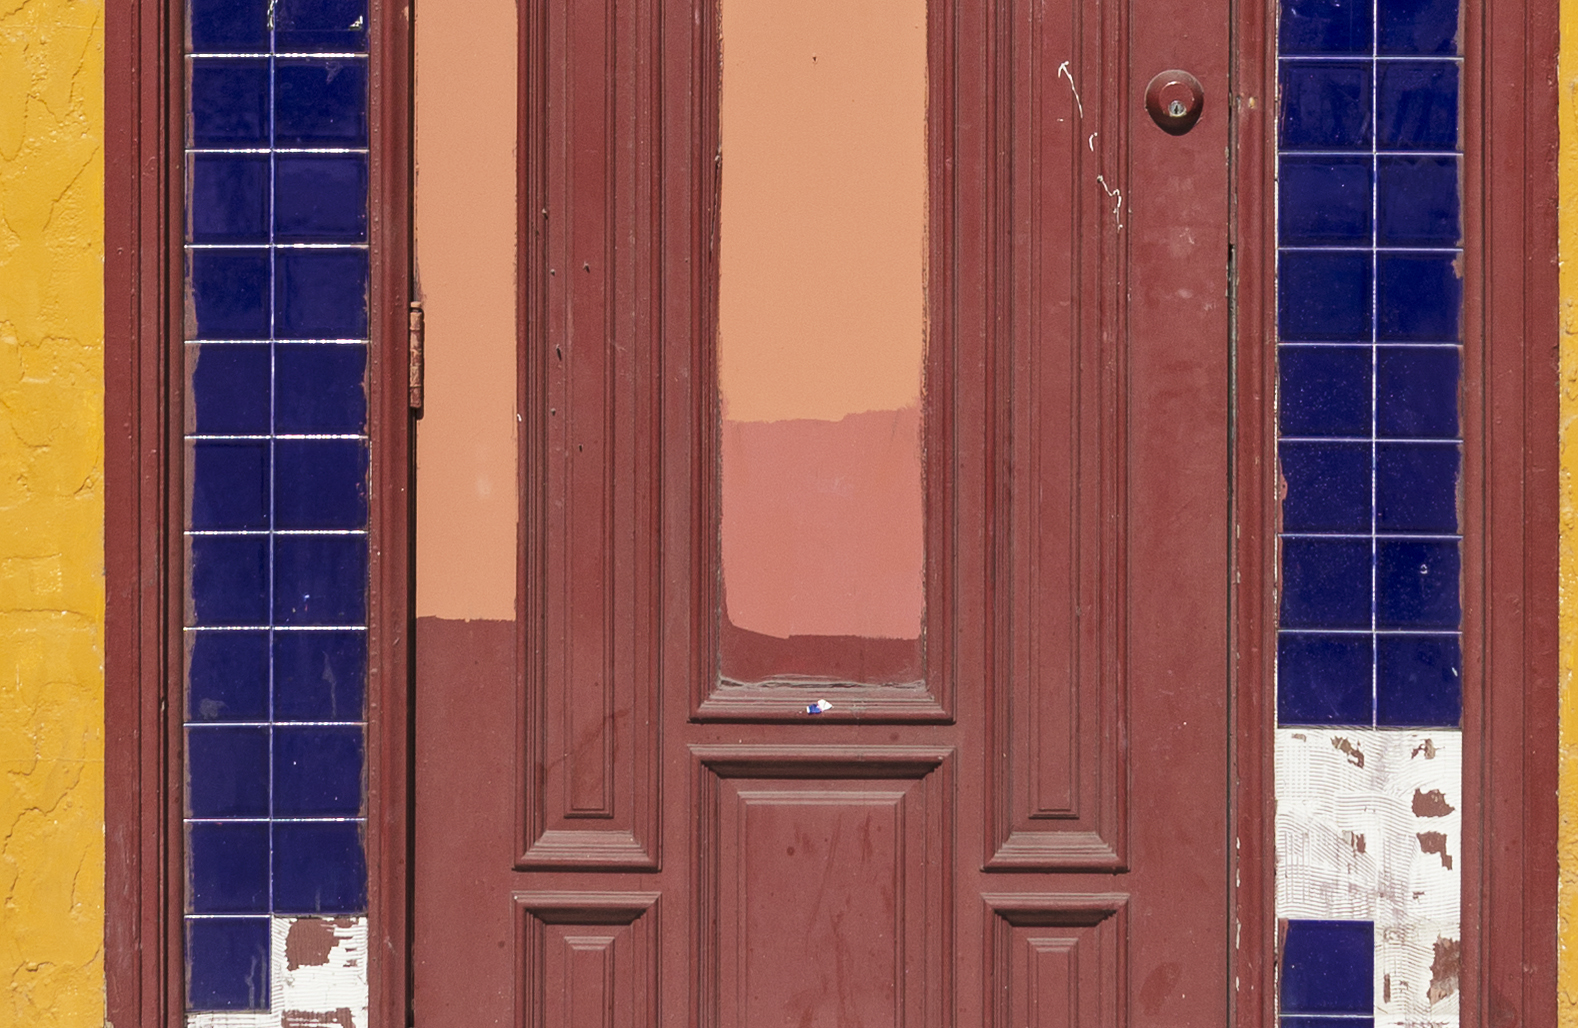 Doorway Abstract_8281.jpg